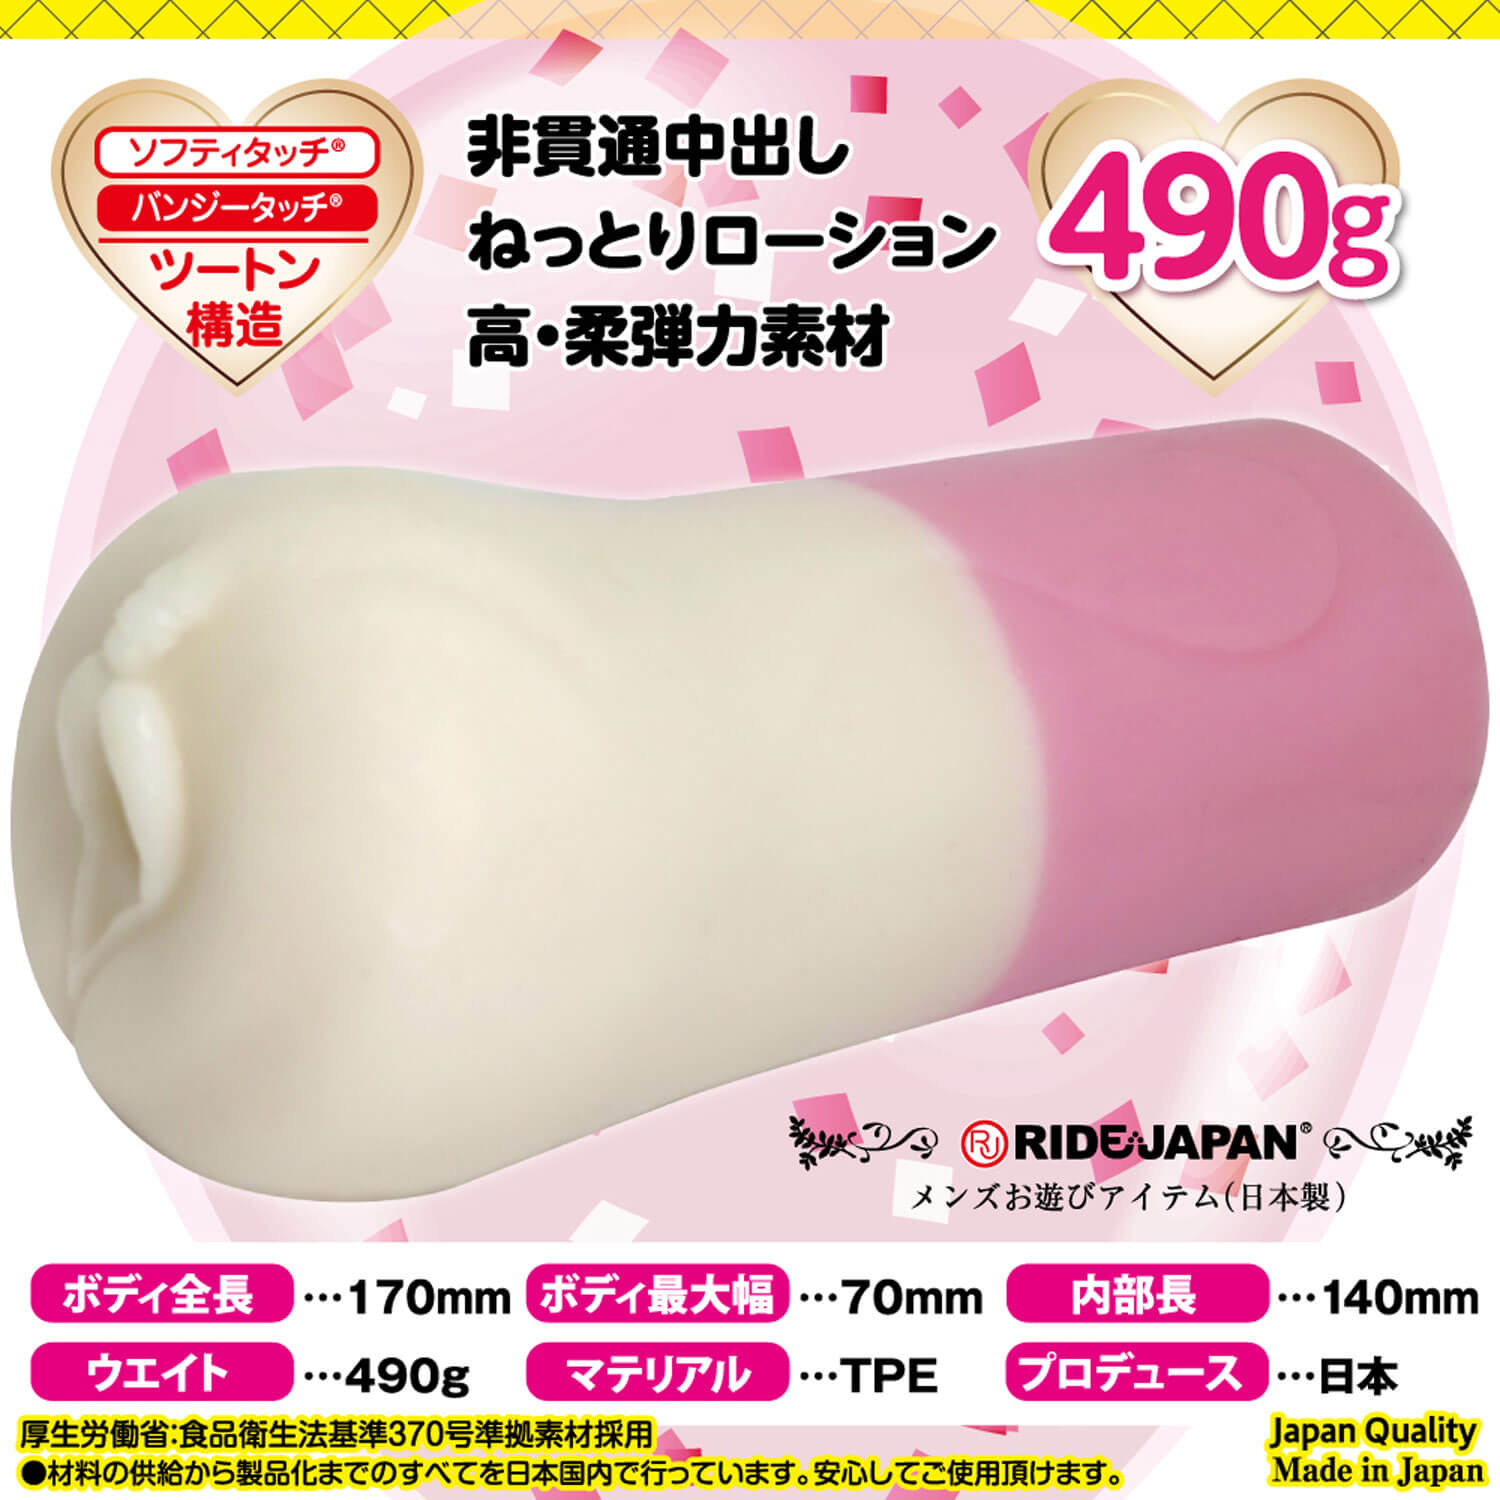 男性用品|動漫自慰膠|中型自慰器|Ride Japan|4562309512838|ふわにゅるバニー;